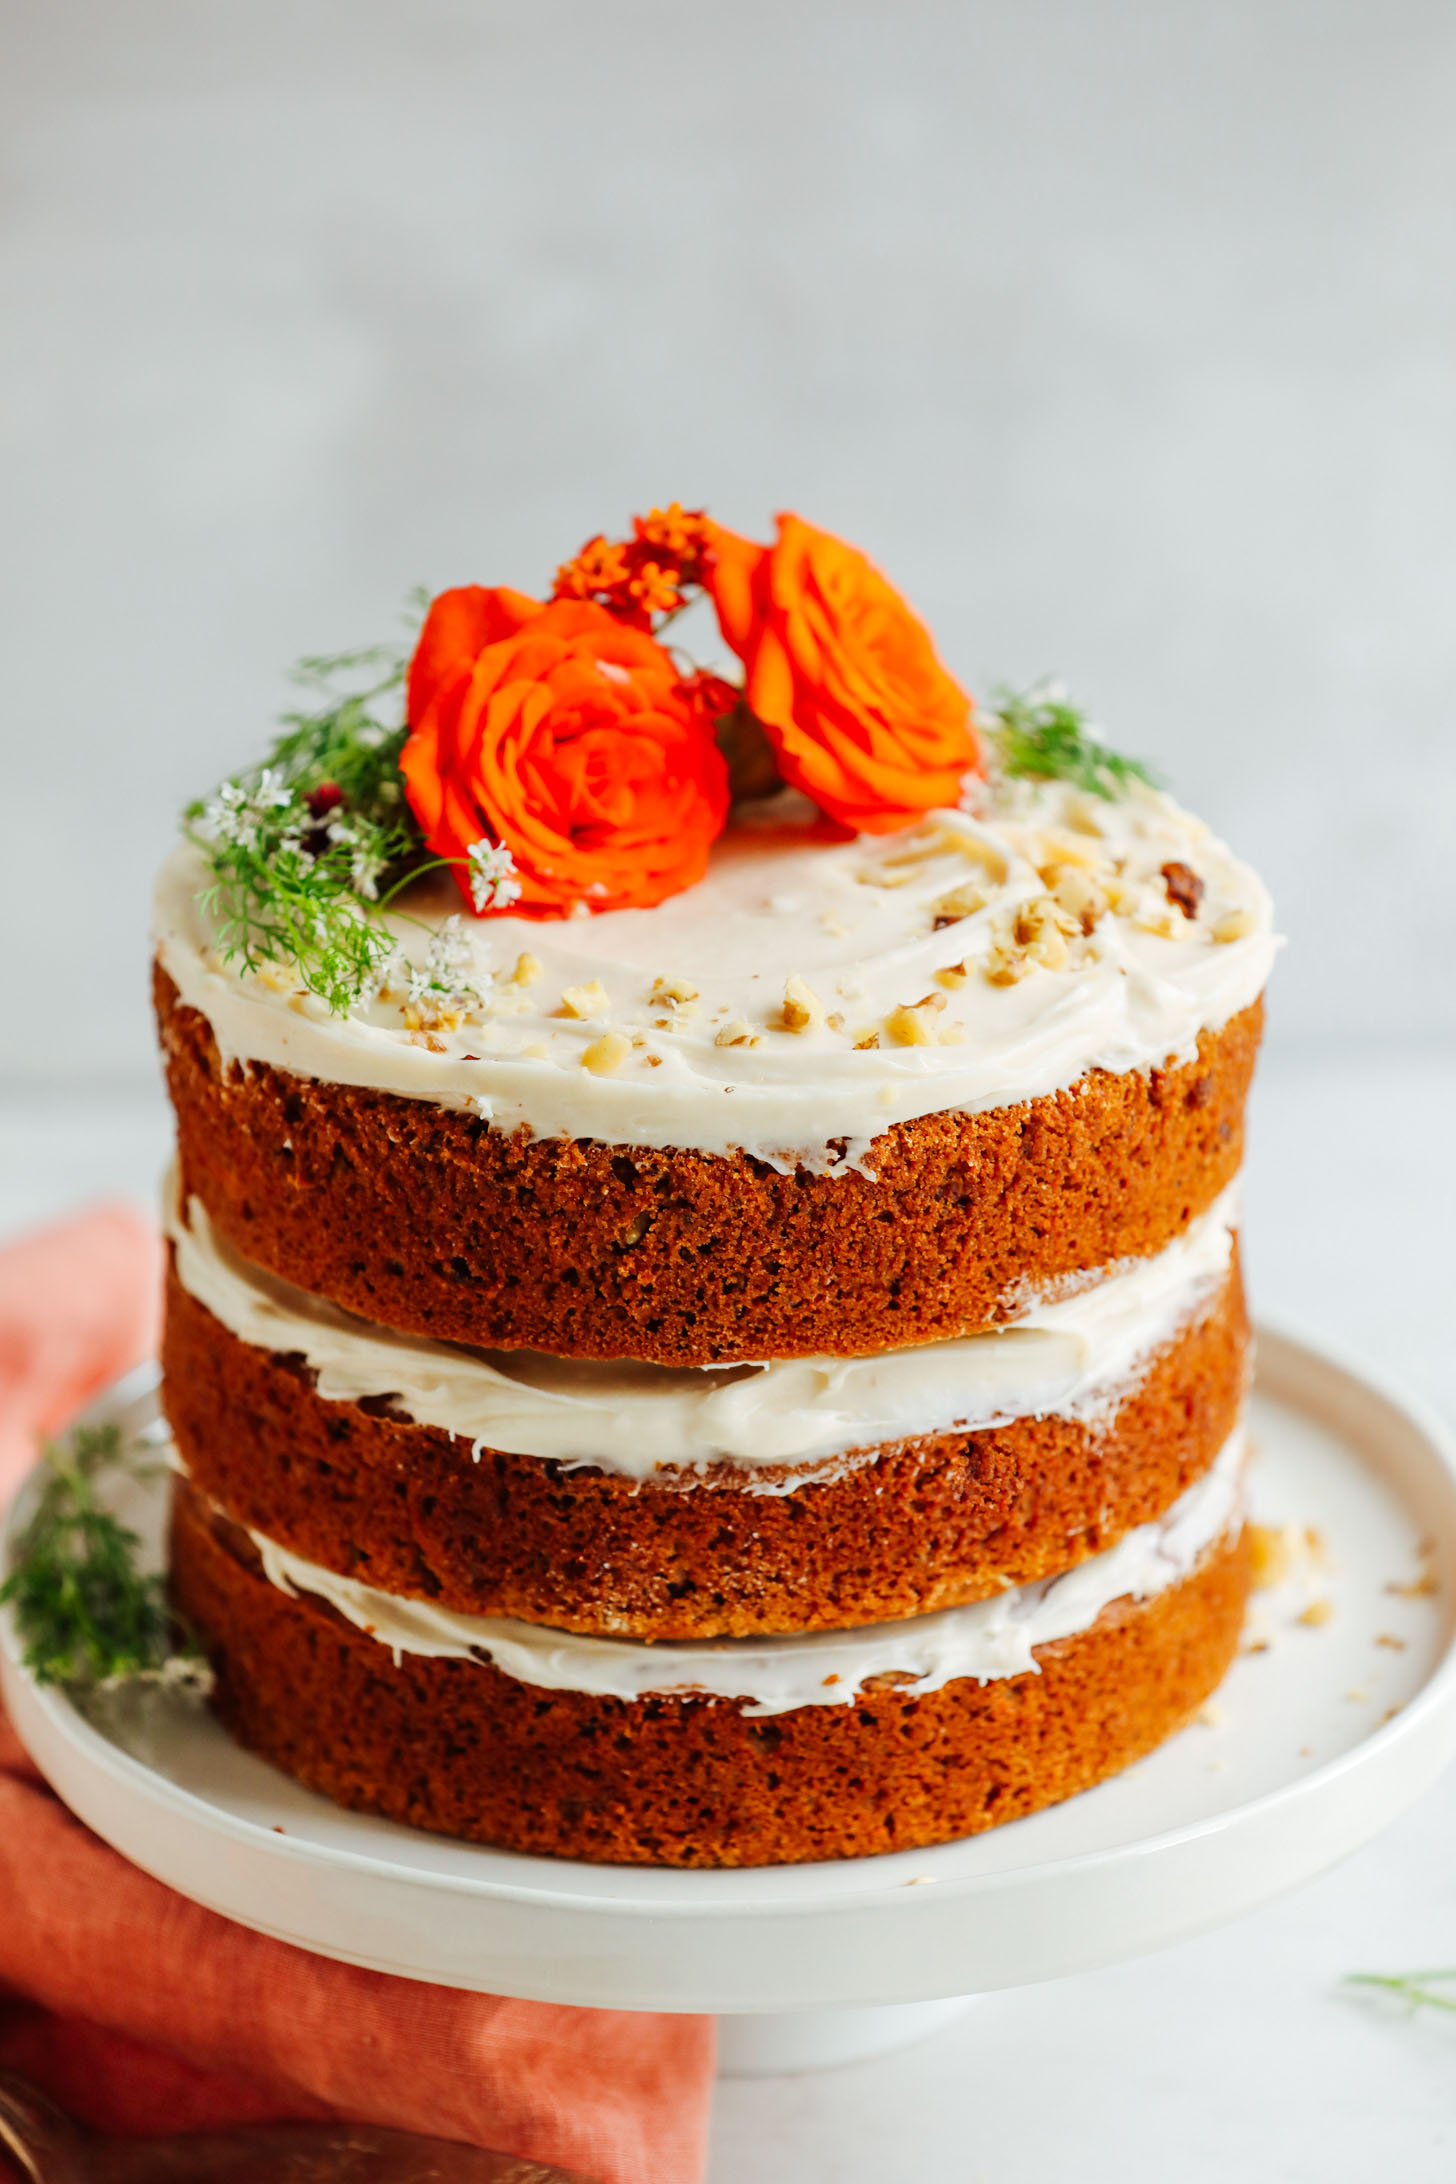 1-Bowl Vegan Gluten-Free Carrot Cake